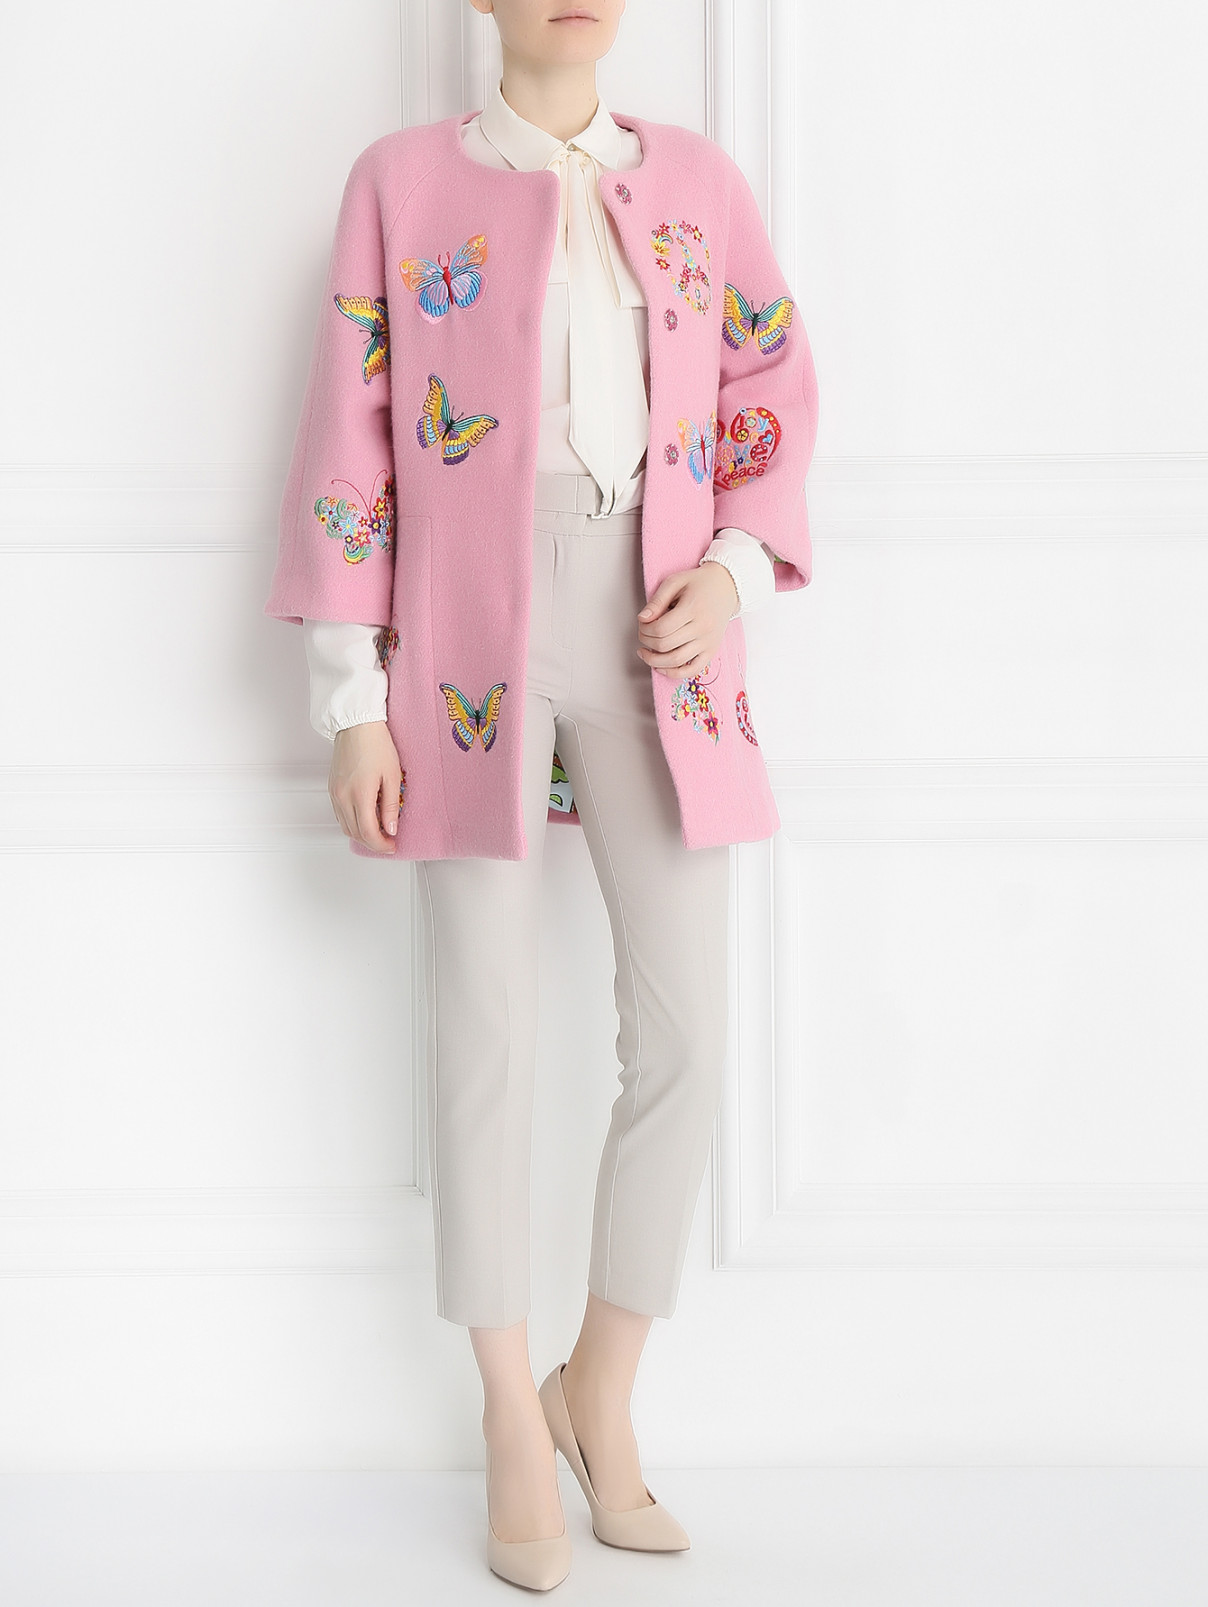 Полупальто из шерсти с  вышивкой Femme by Michele R.  –  Модель Общий вид  – Цвет:  Розовый